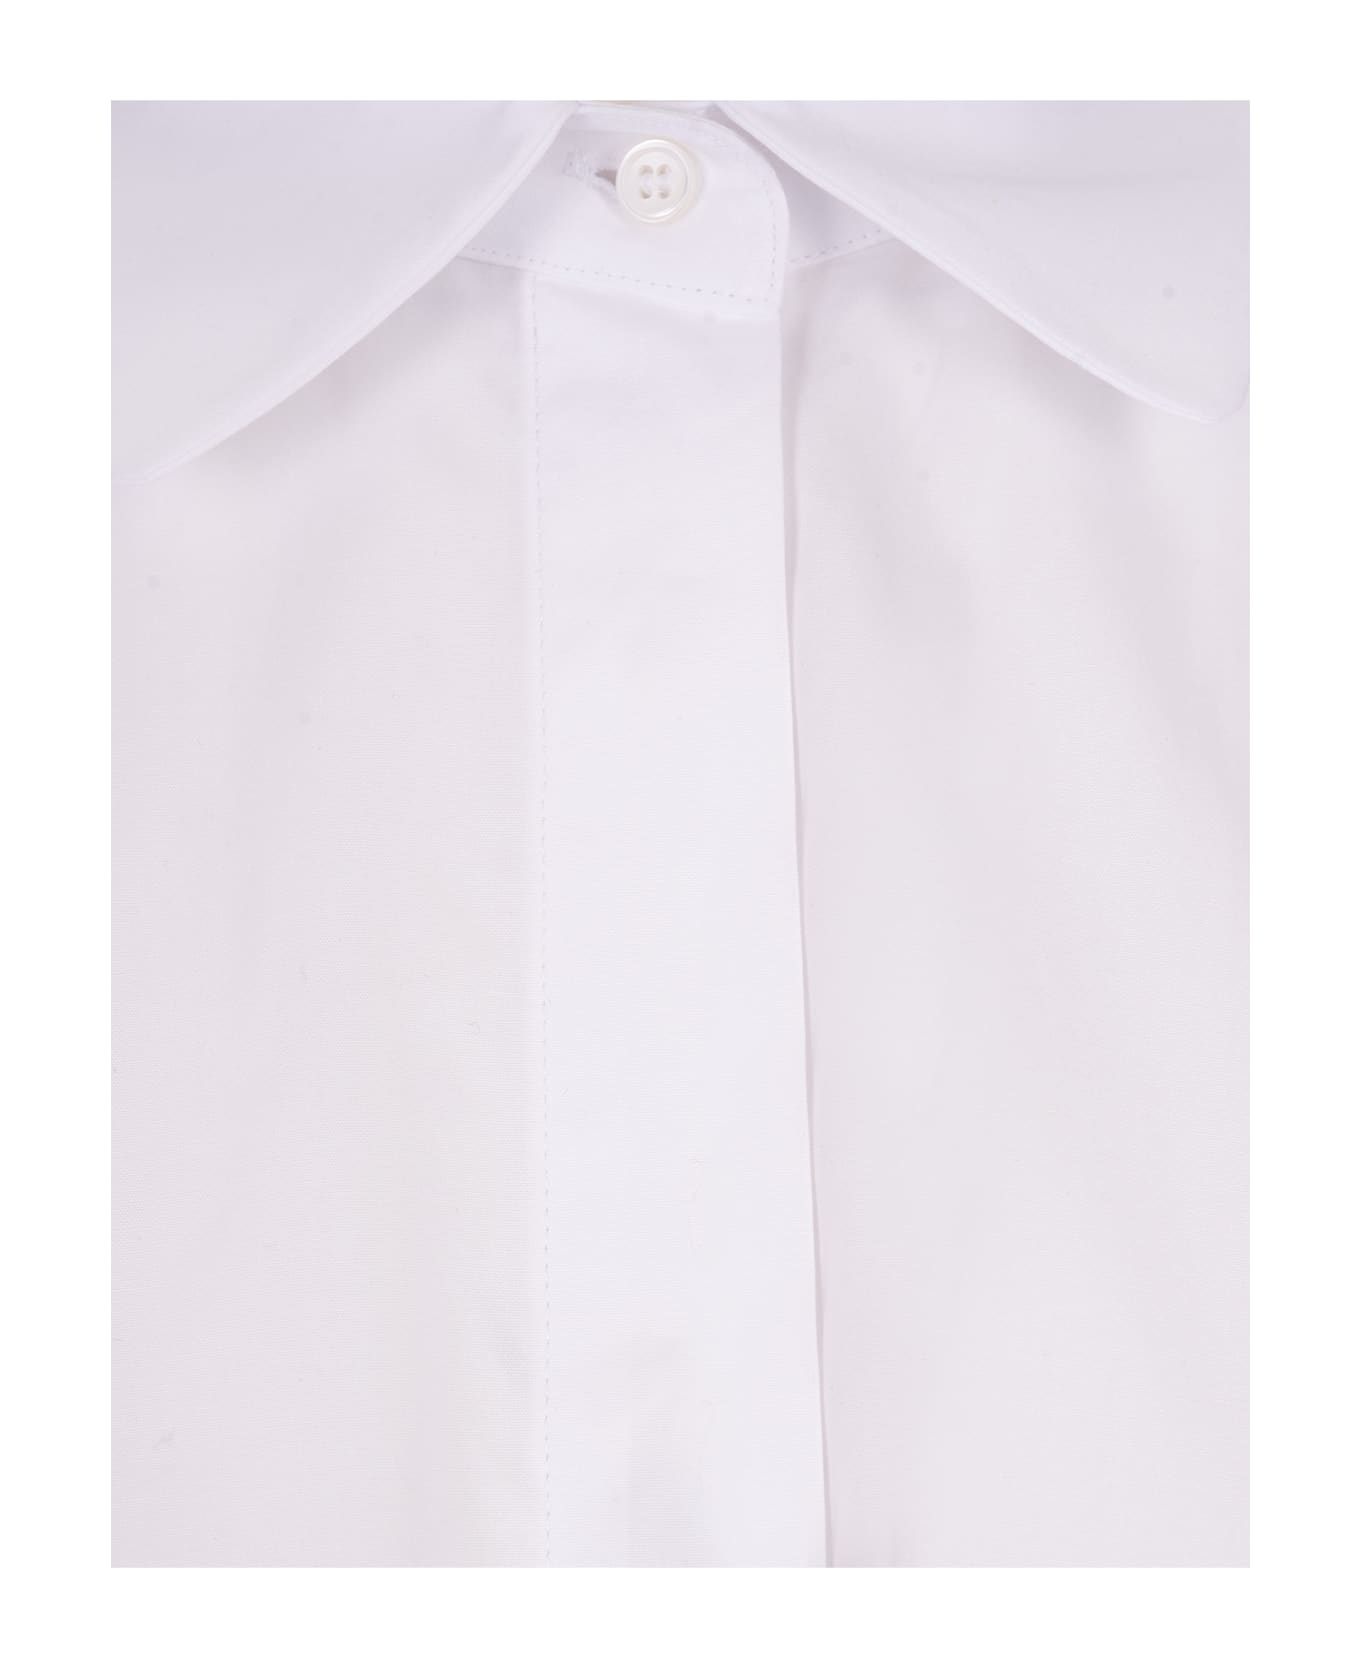 'S Max Mara White Tea Shirt - White